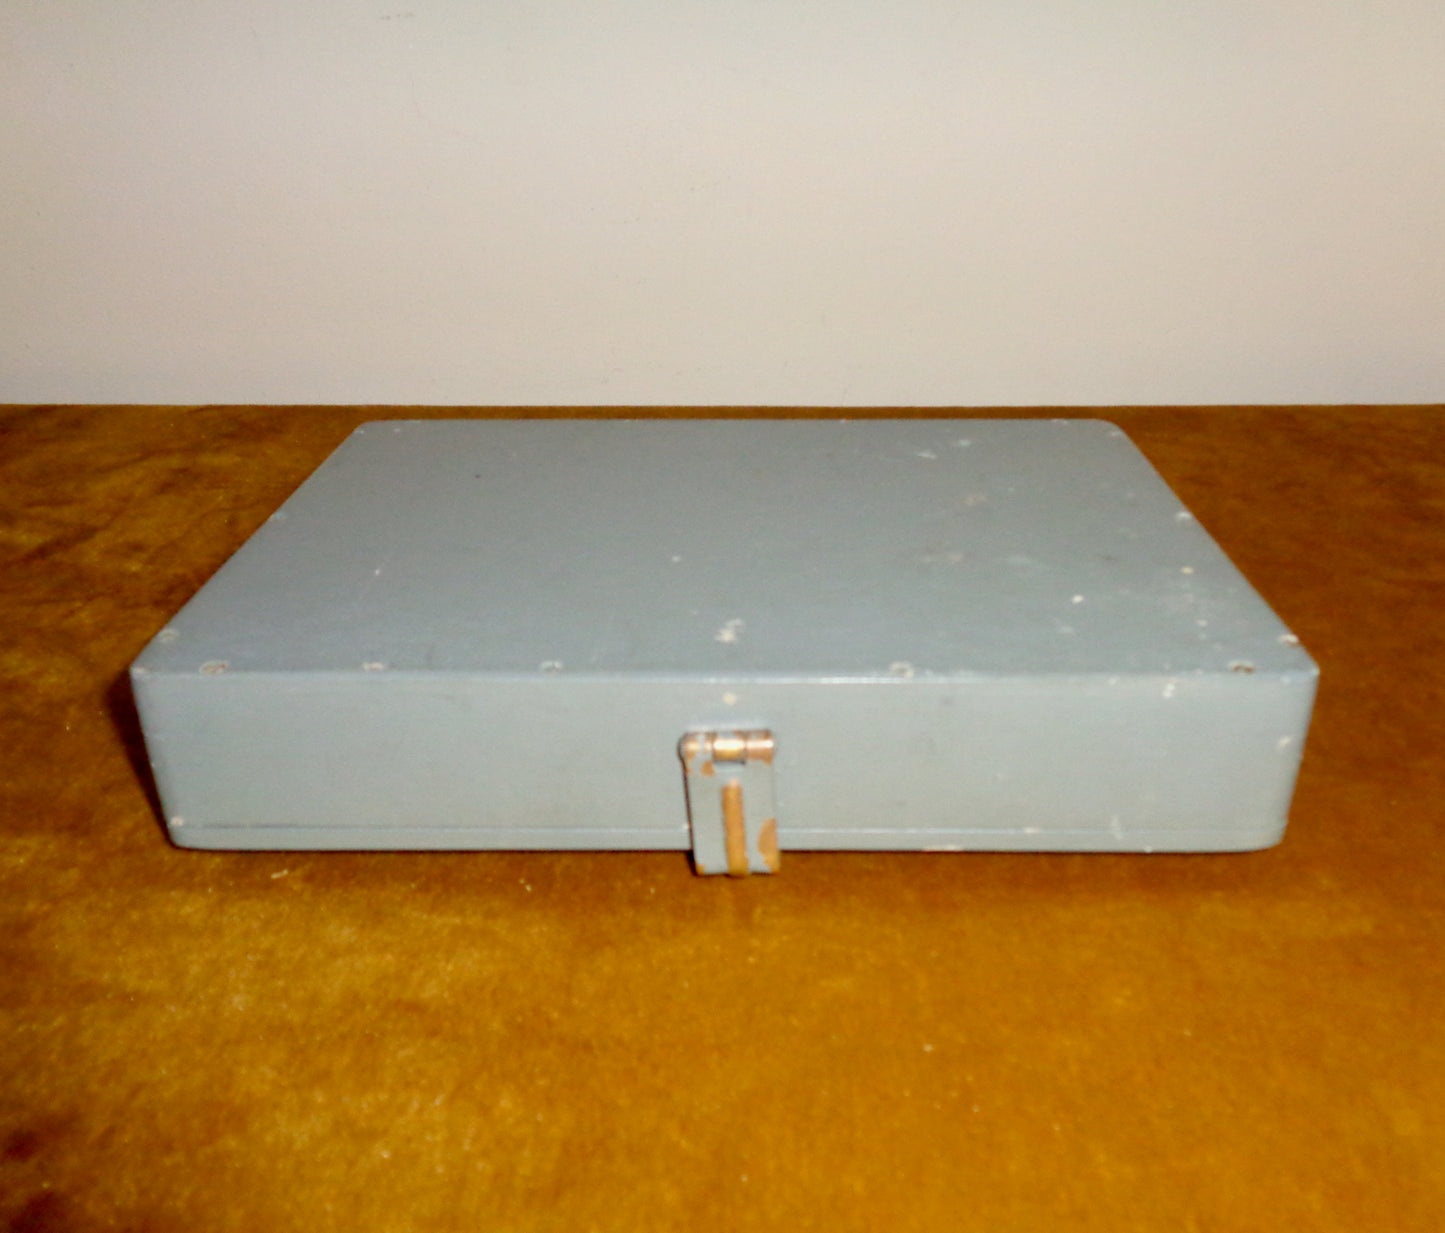 WW2 RAF Navigator's Air Ministry Instrument / Pencil Box 6B/472